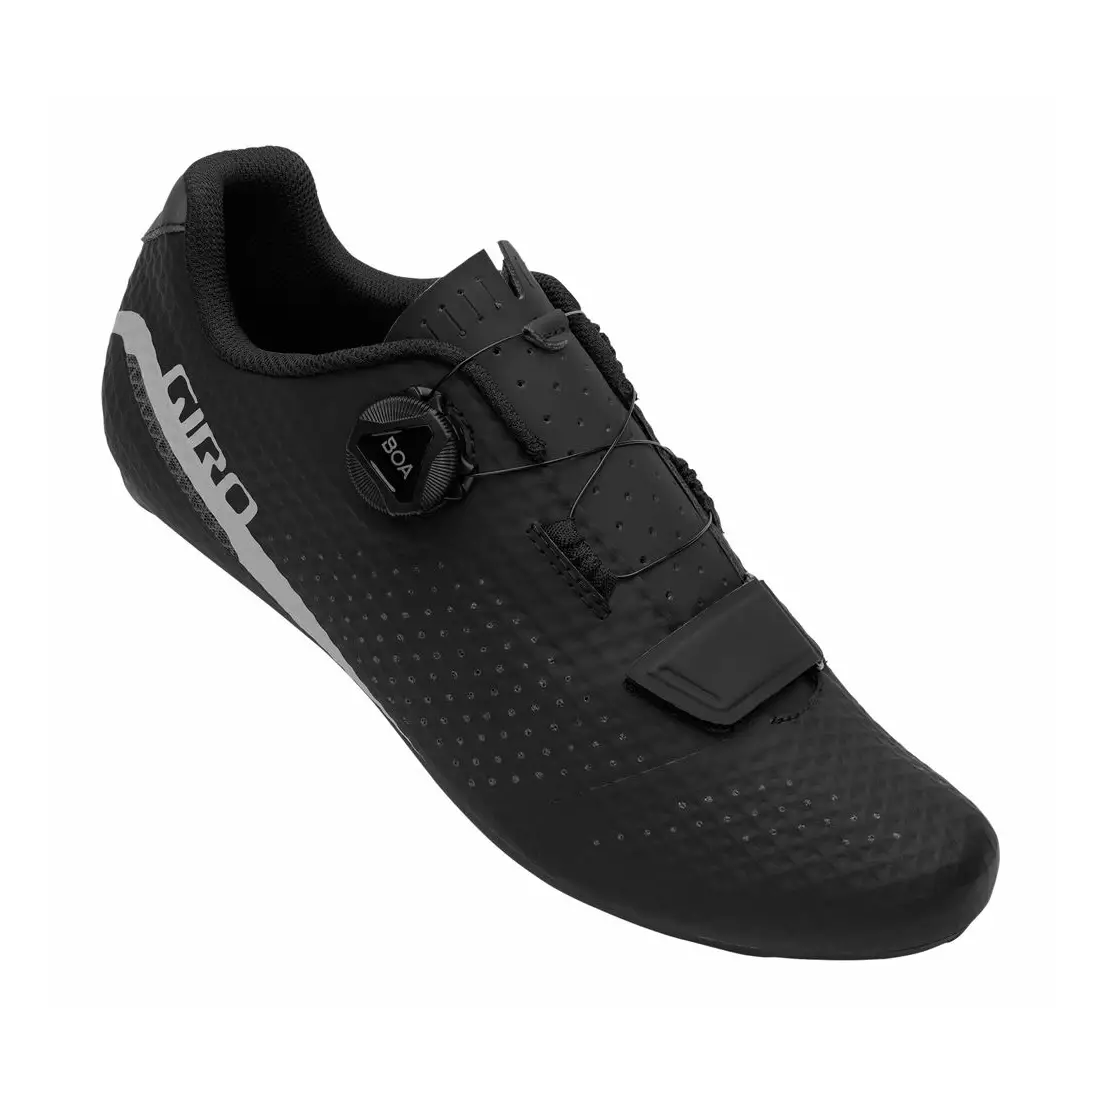 GIRO pánská cyklistická obuv CADET black GR-7123076